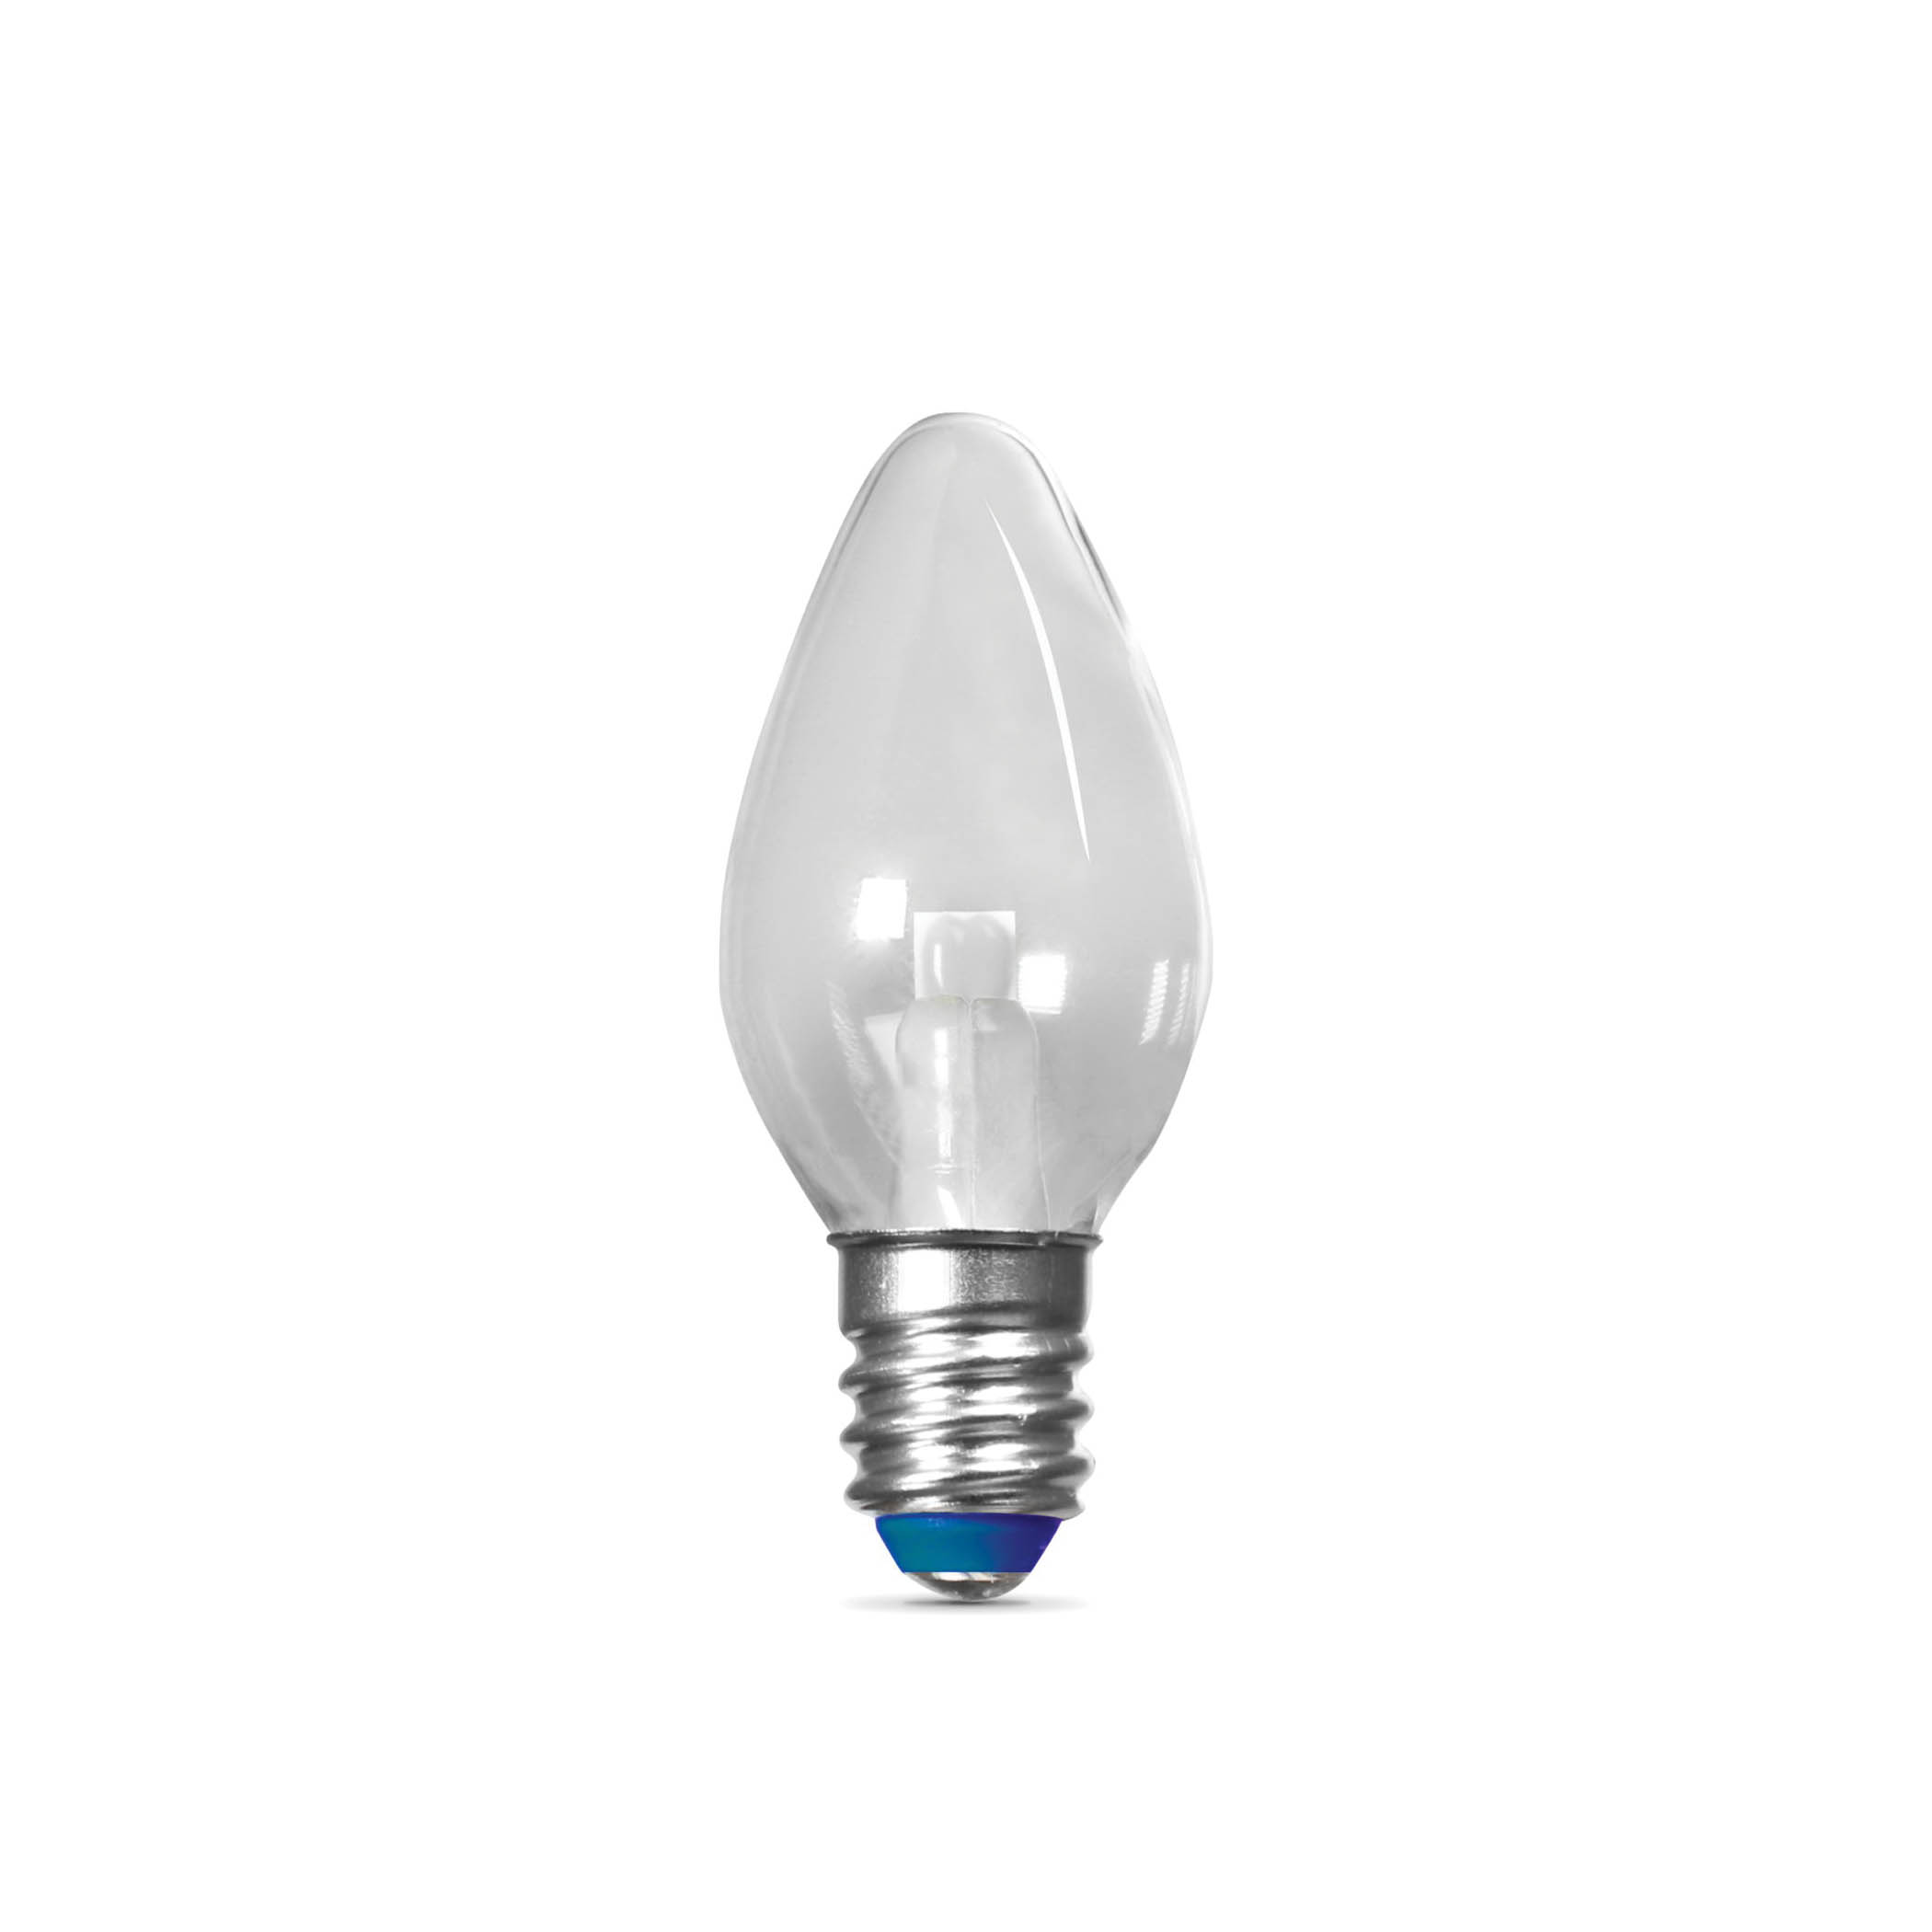 Feit Electric BPC7BLEDG22 Night Light Bulb, E12 Candelabra Lamp Base, Blue Light, 15,000 hr Average Life - 1